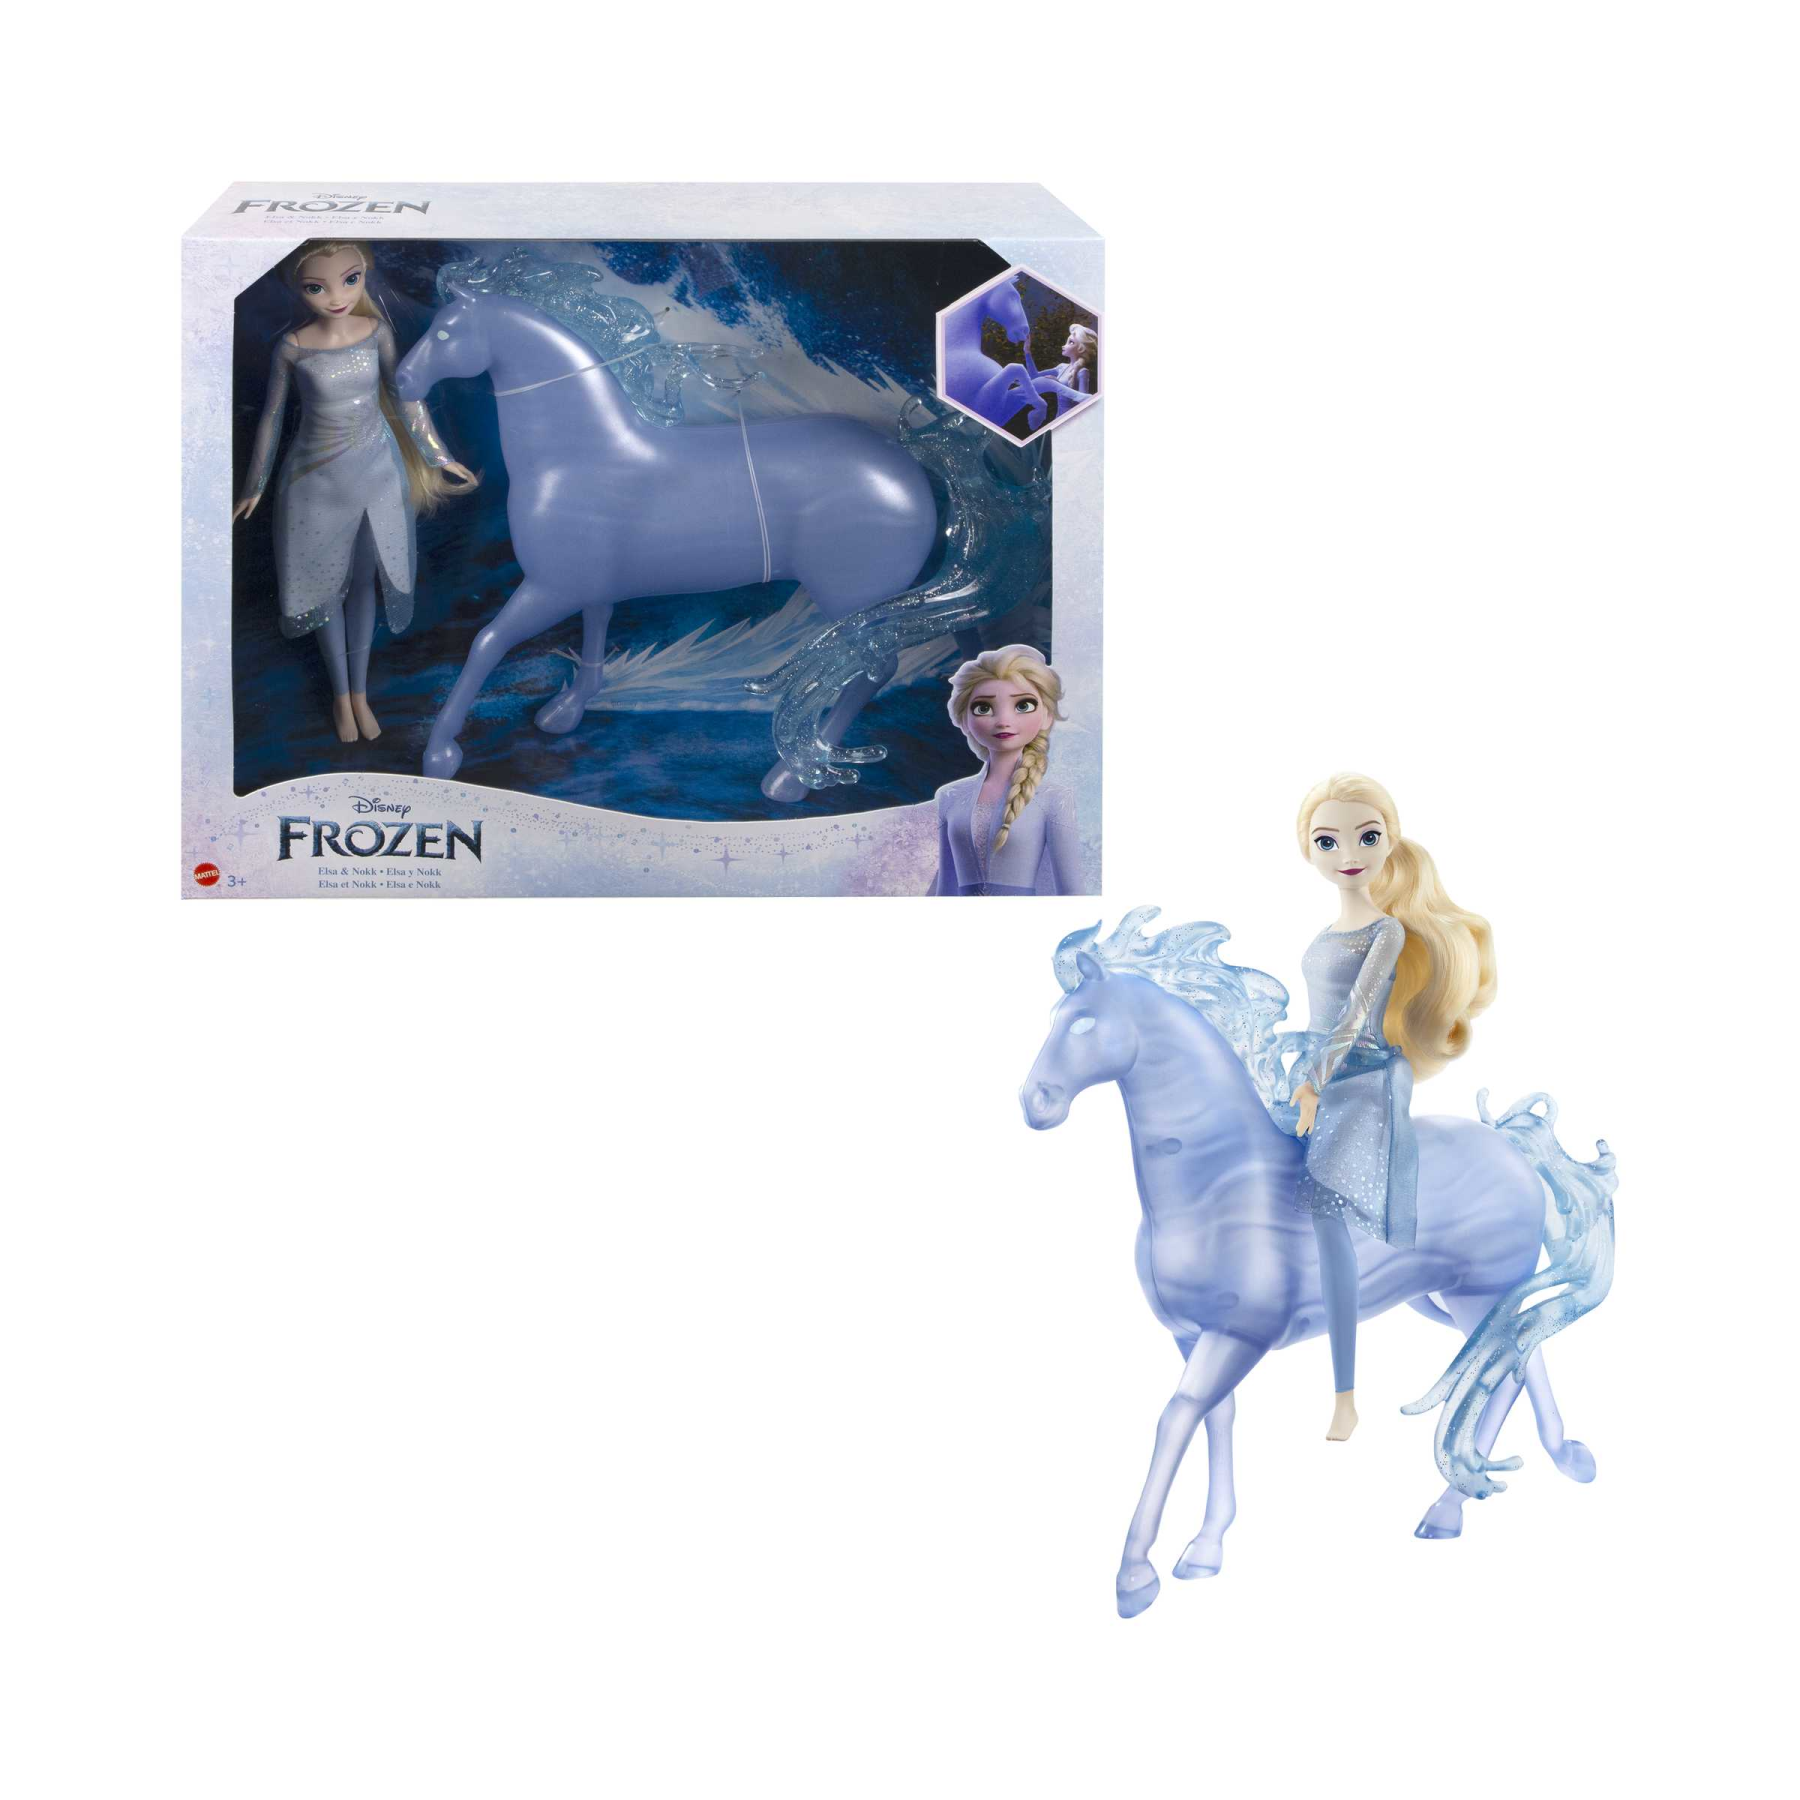 Disney frozen - elsa e nook, set con bambola con abito azzurro e creatura acquatica a forma di cavallo, ispirati al film disney frozen 2, 3+ anni, hlw58 - Frozen